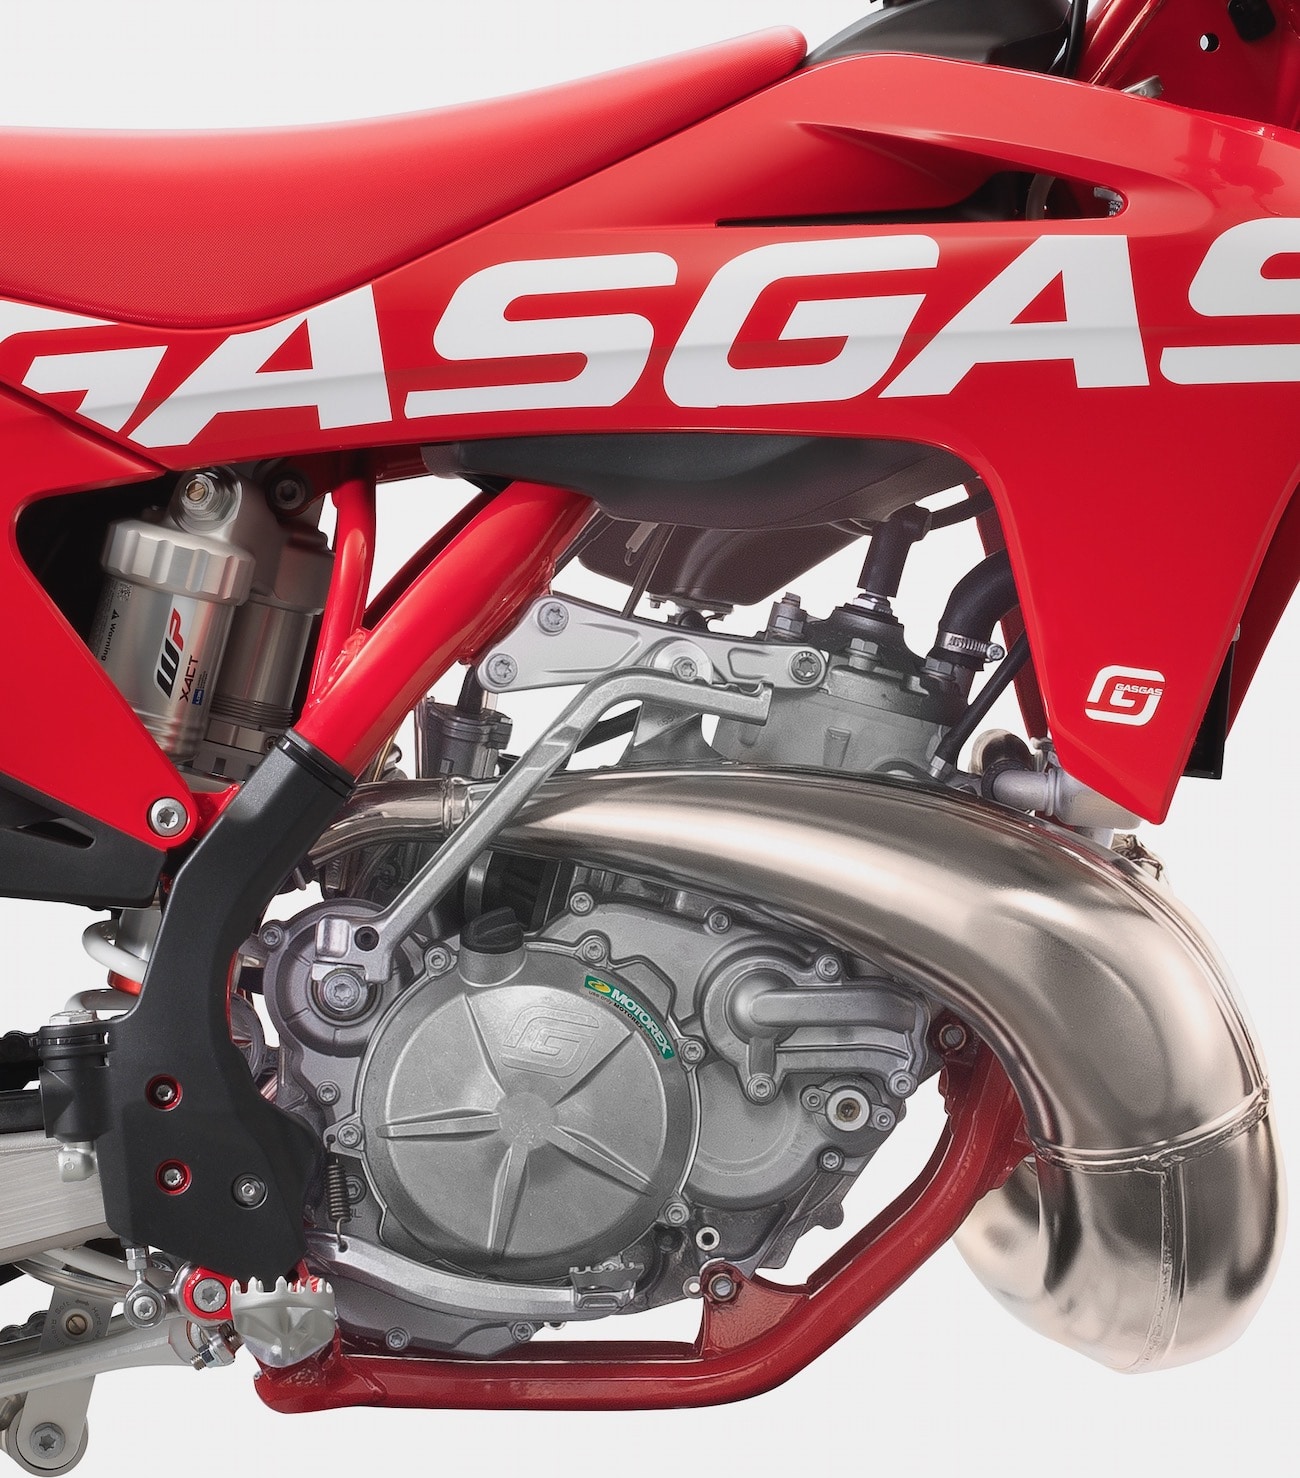 GasGas MC 250, Moto